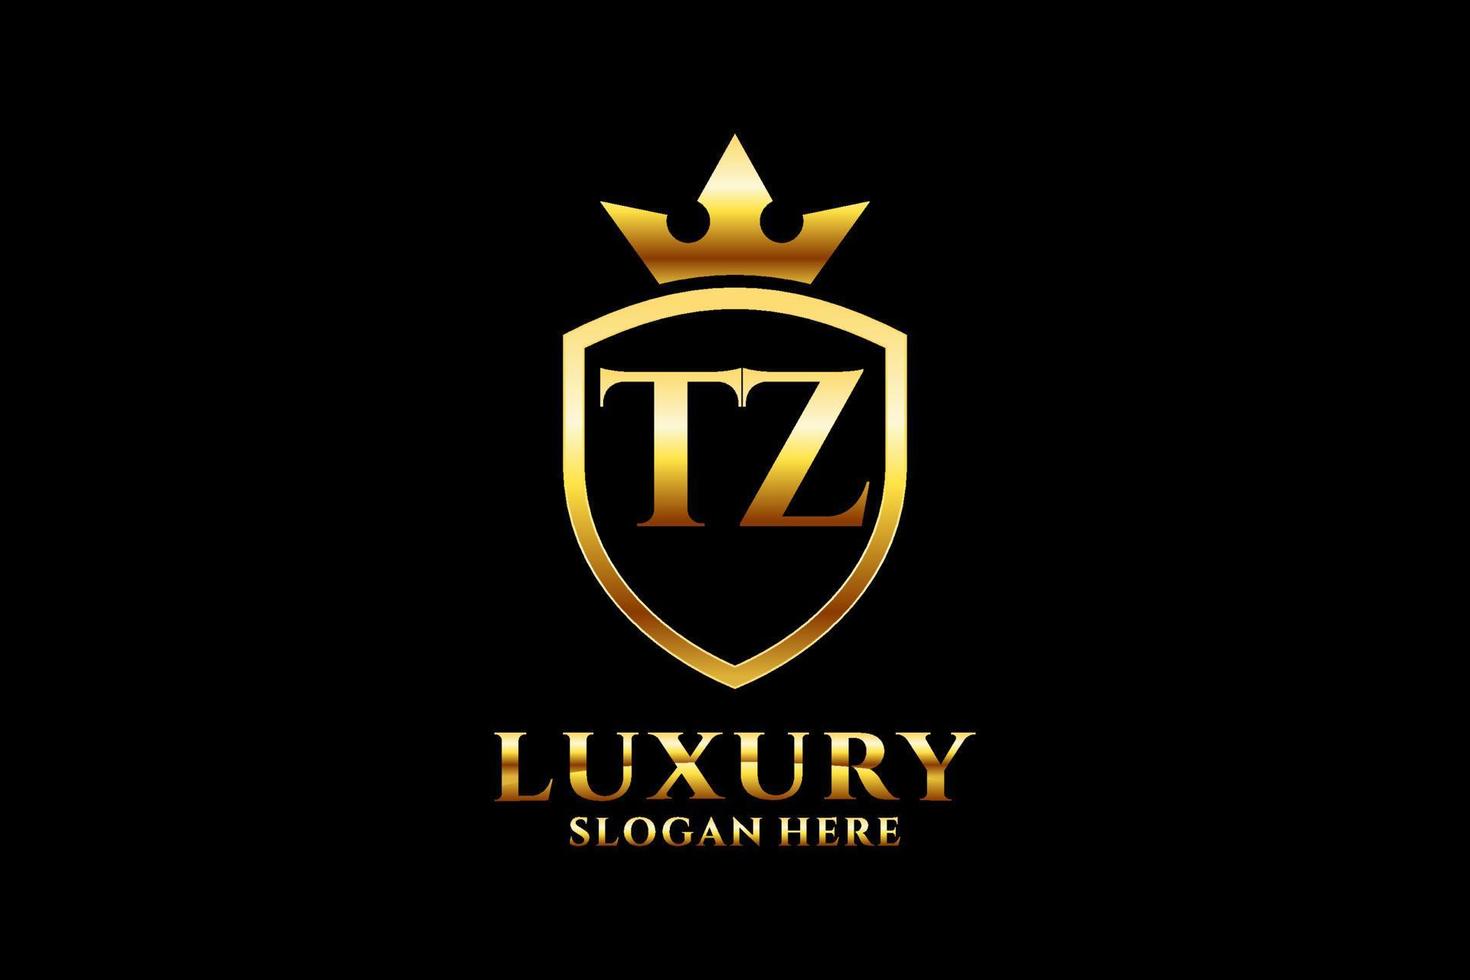 logo monogramme de luxe élégant initial tz ou modèle de badge avec volutes et couronne royale - parfait pour les projets de marque de luxe vecteur